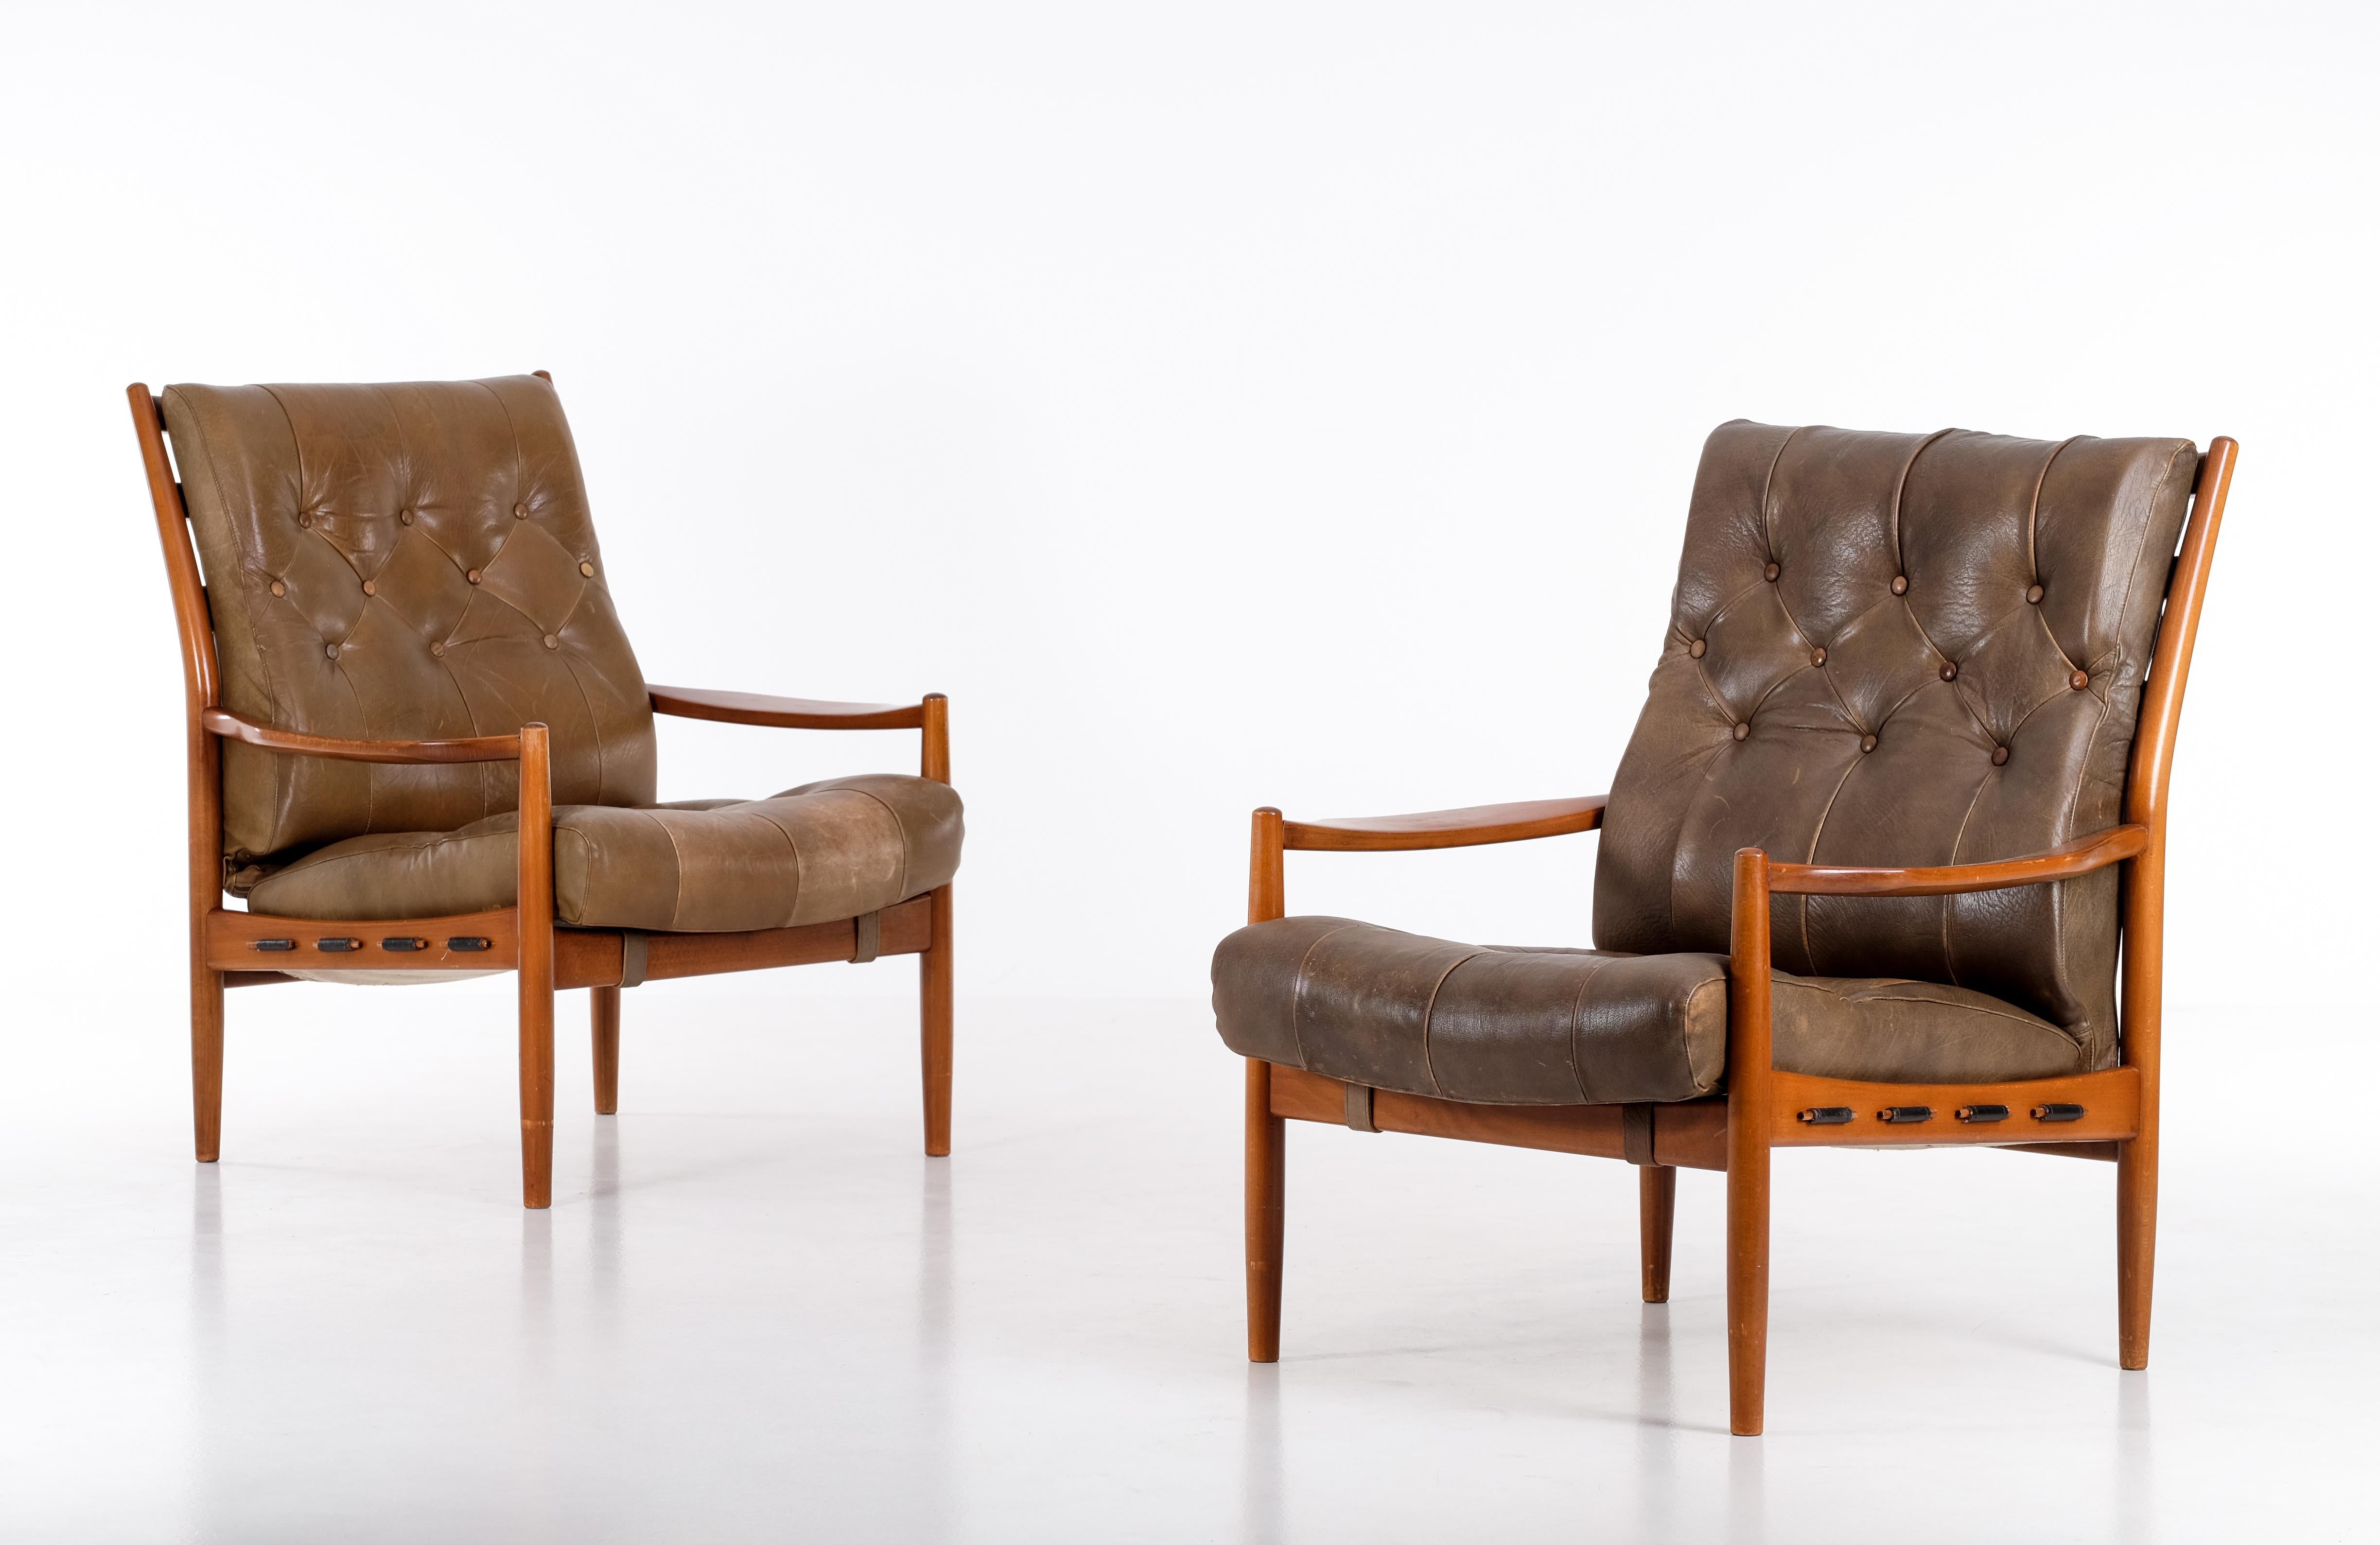 Paire de fauteuils modèle 'Läckö' conçus par Ingemar Thillmark.
Produit par OPE, Suède, années 1960.
Bon état vintage, avec de petits signes d'utilisation.

